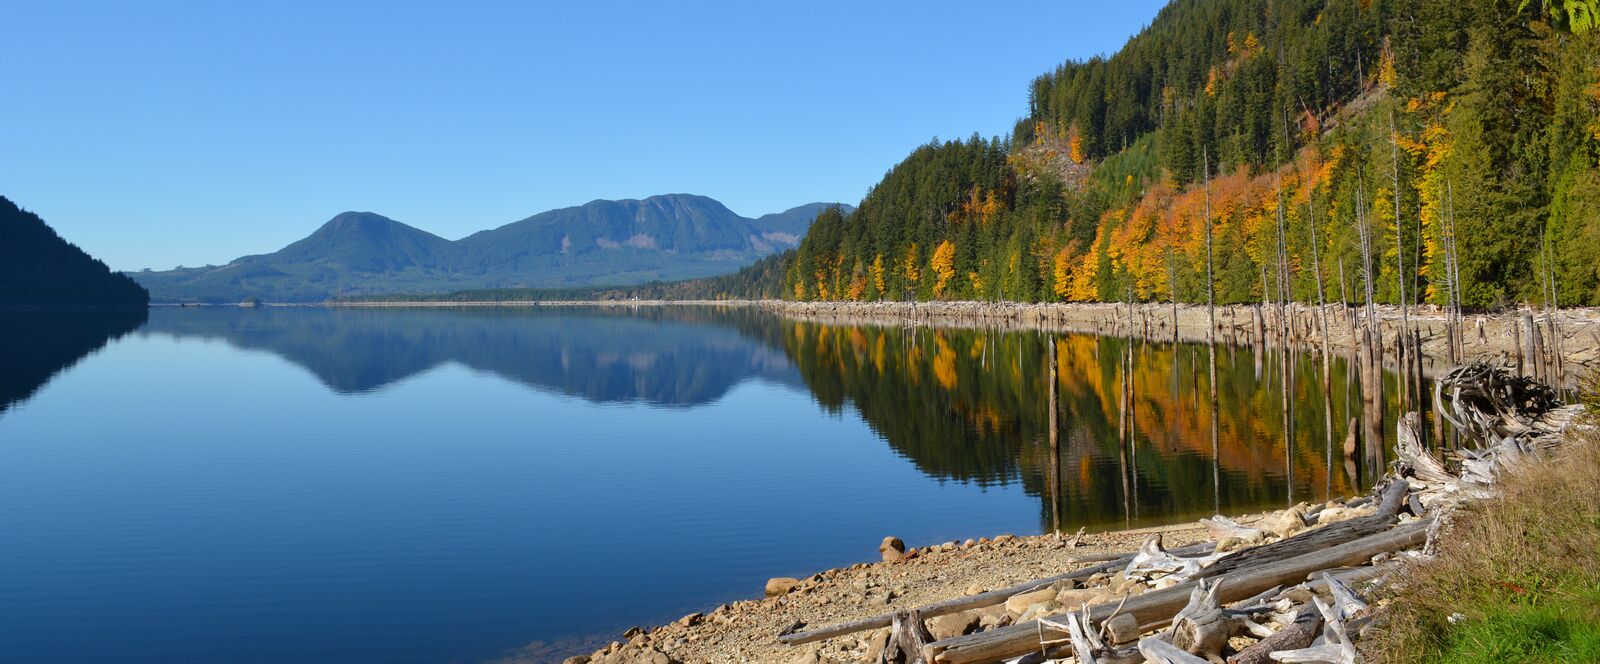 Der spiegelglatte Lowest Lake bei Powell River an der Sunshine Coast in British Columbia